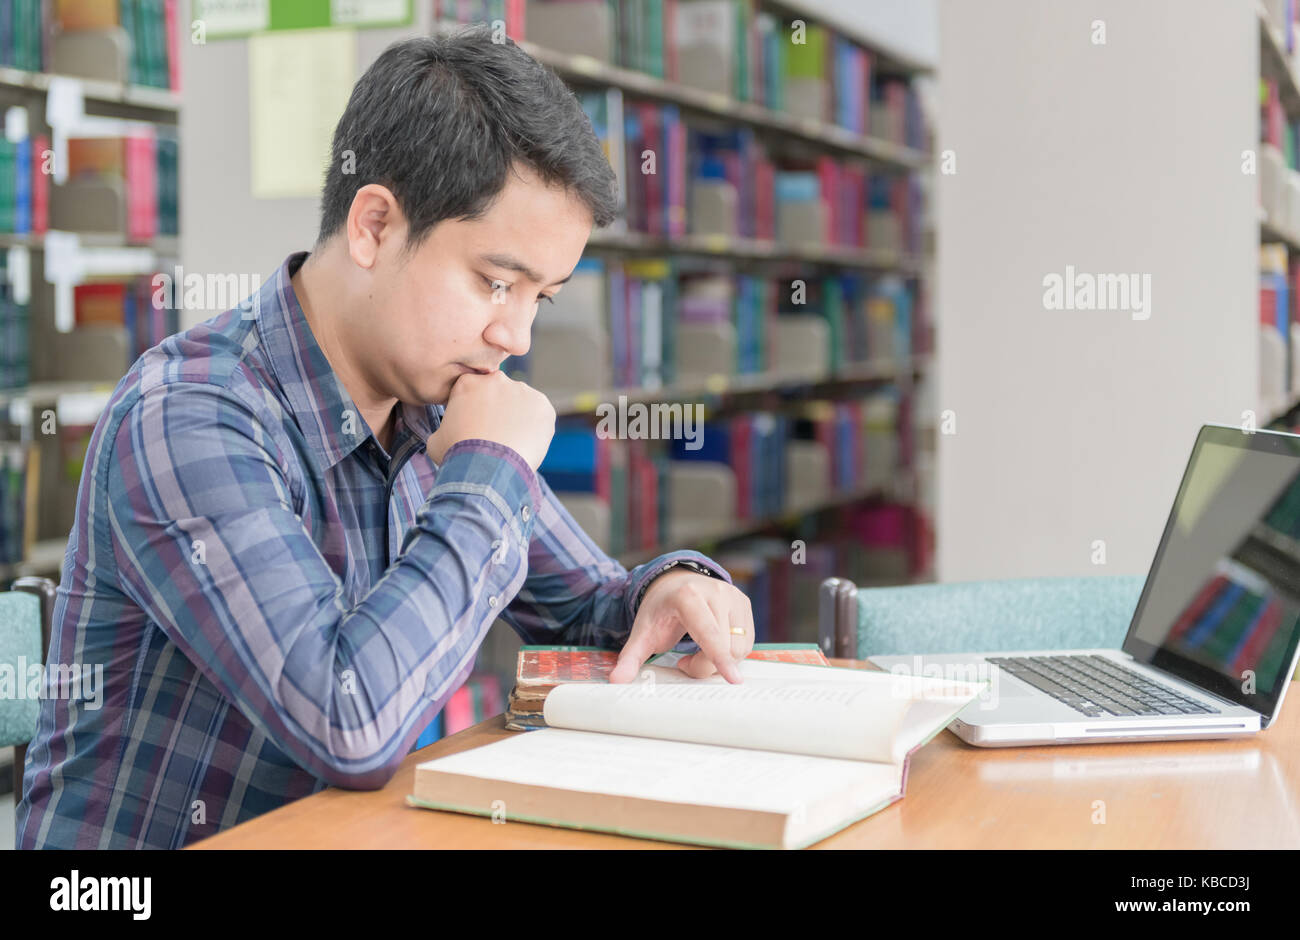 Библиотека знание людям. Компьютеры в библиотеке. Студенческие чтения. Студент читает книгу в библиотеке. Человек с книгой учета сидит за столом.